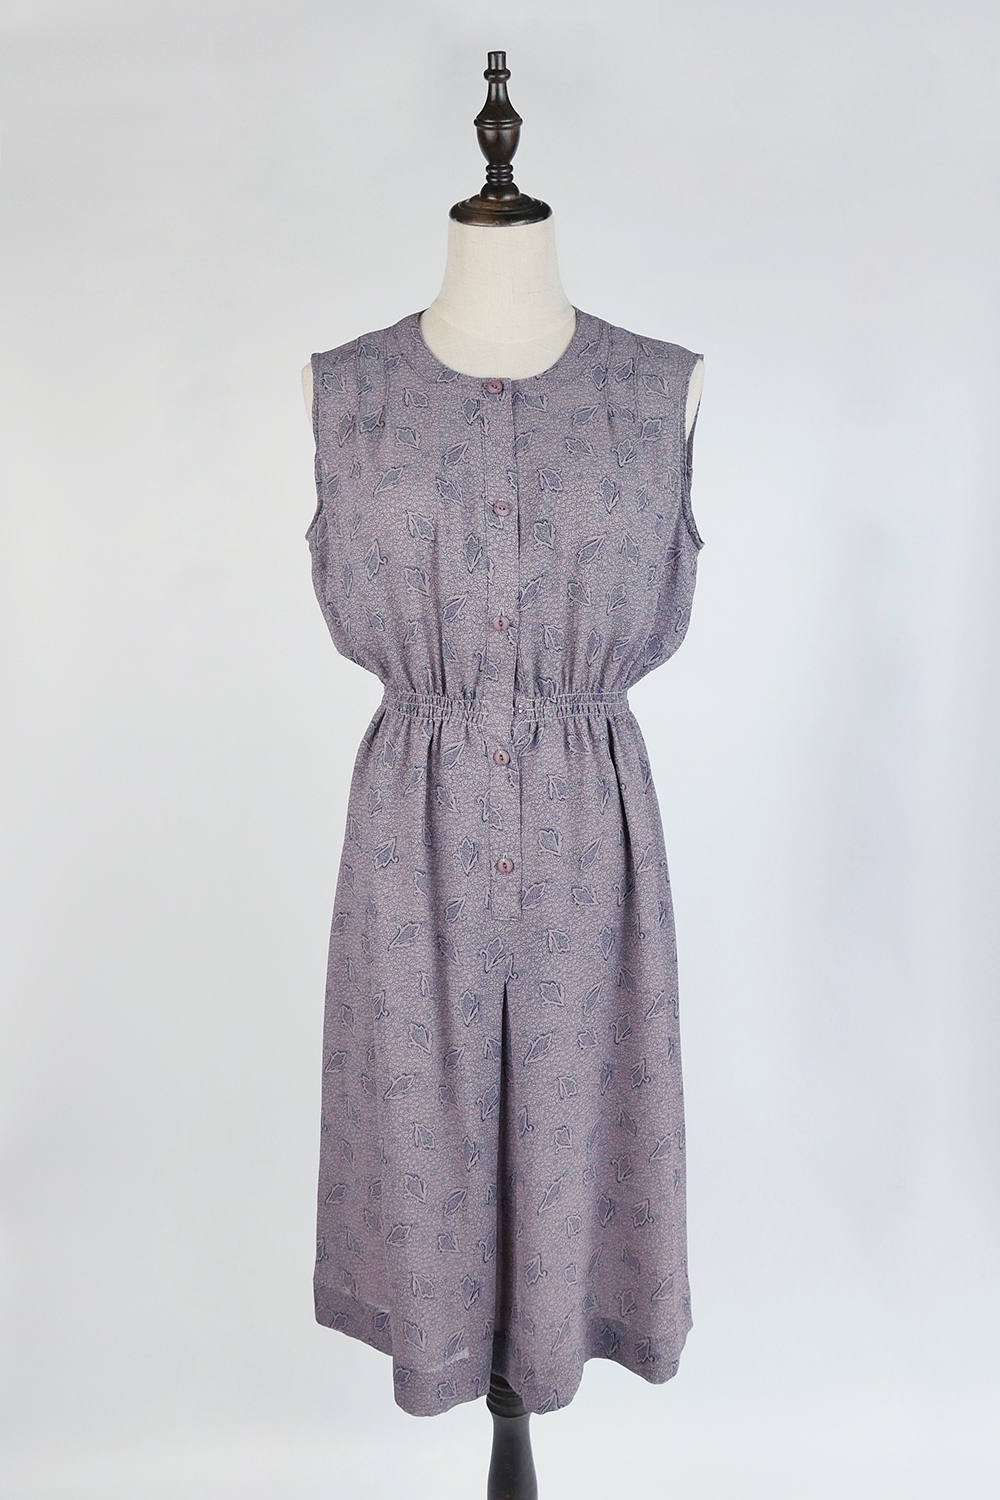 Vintage Japanese Dress, Upcycled Vintage Dress, Navy Leaf Flora Print ...